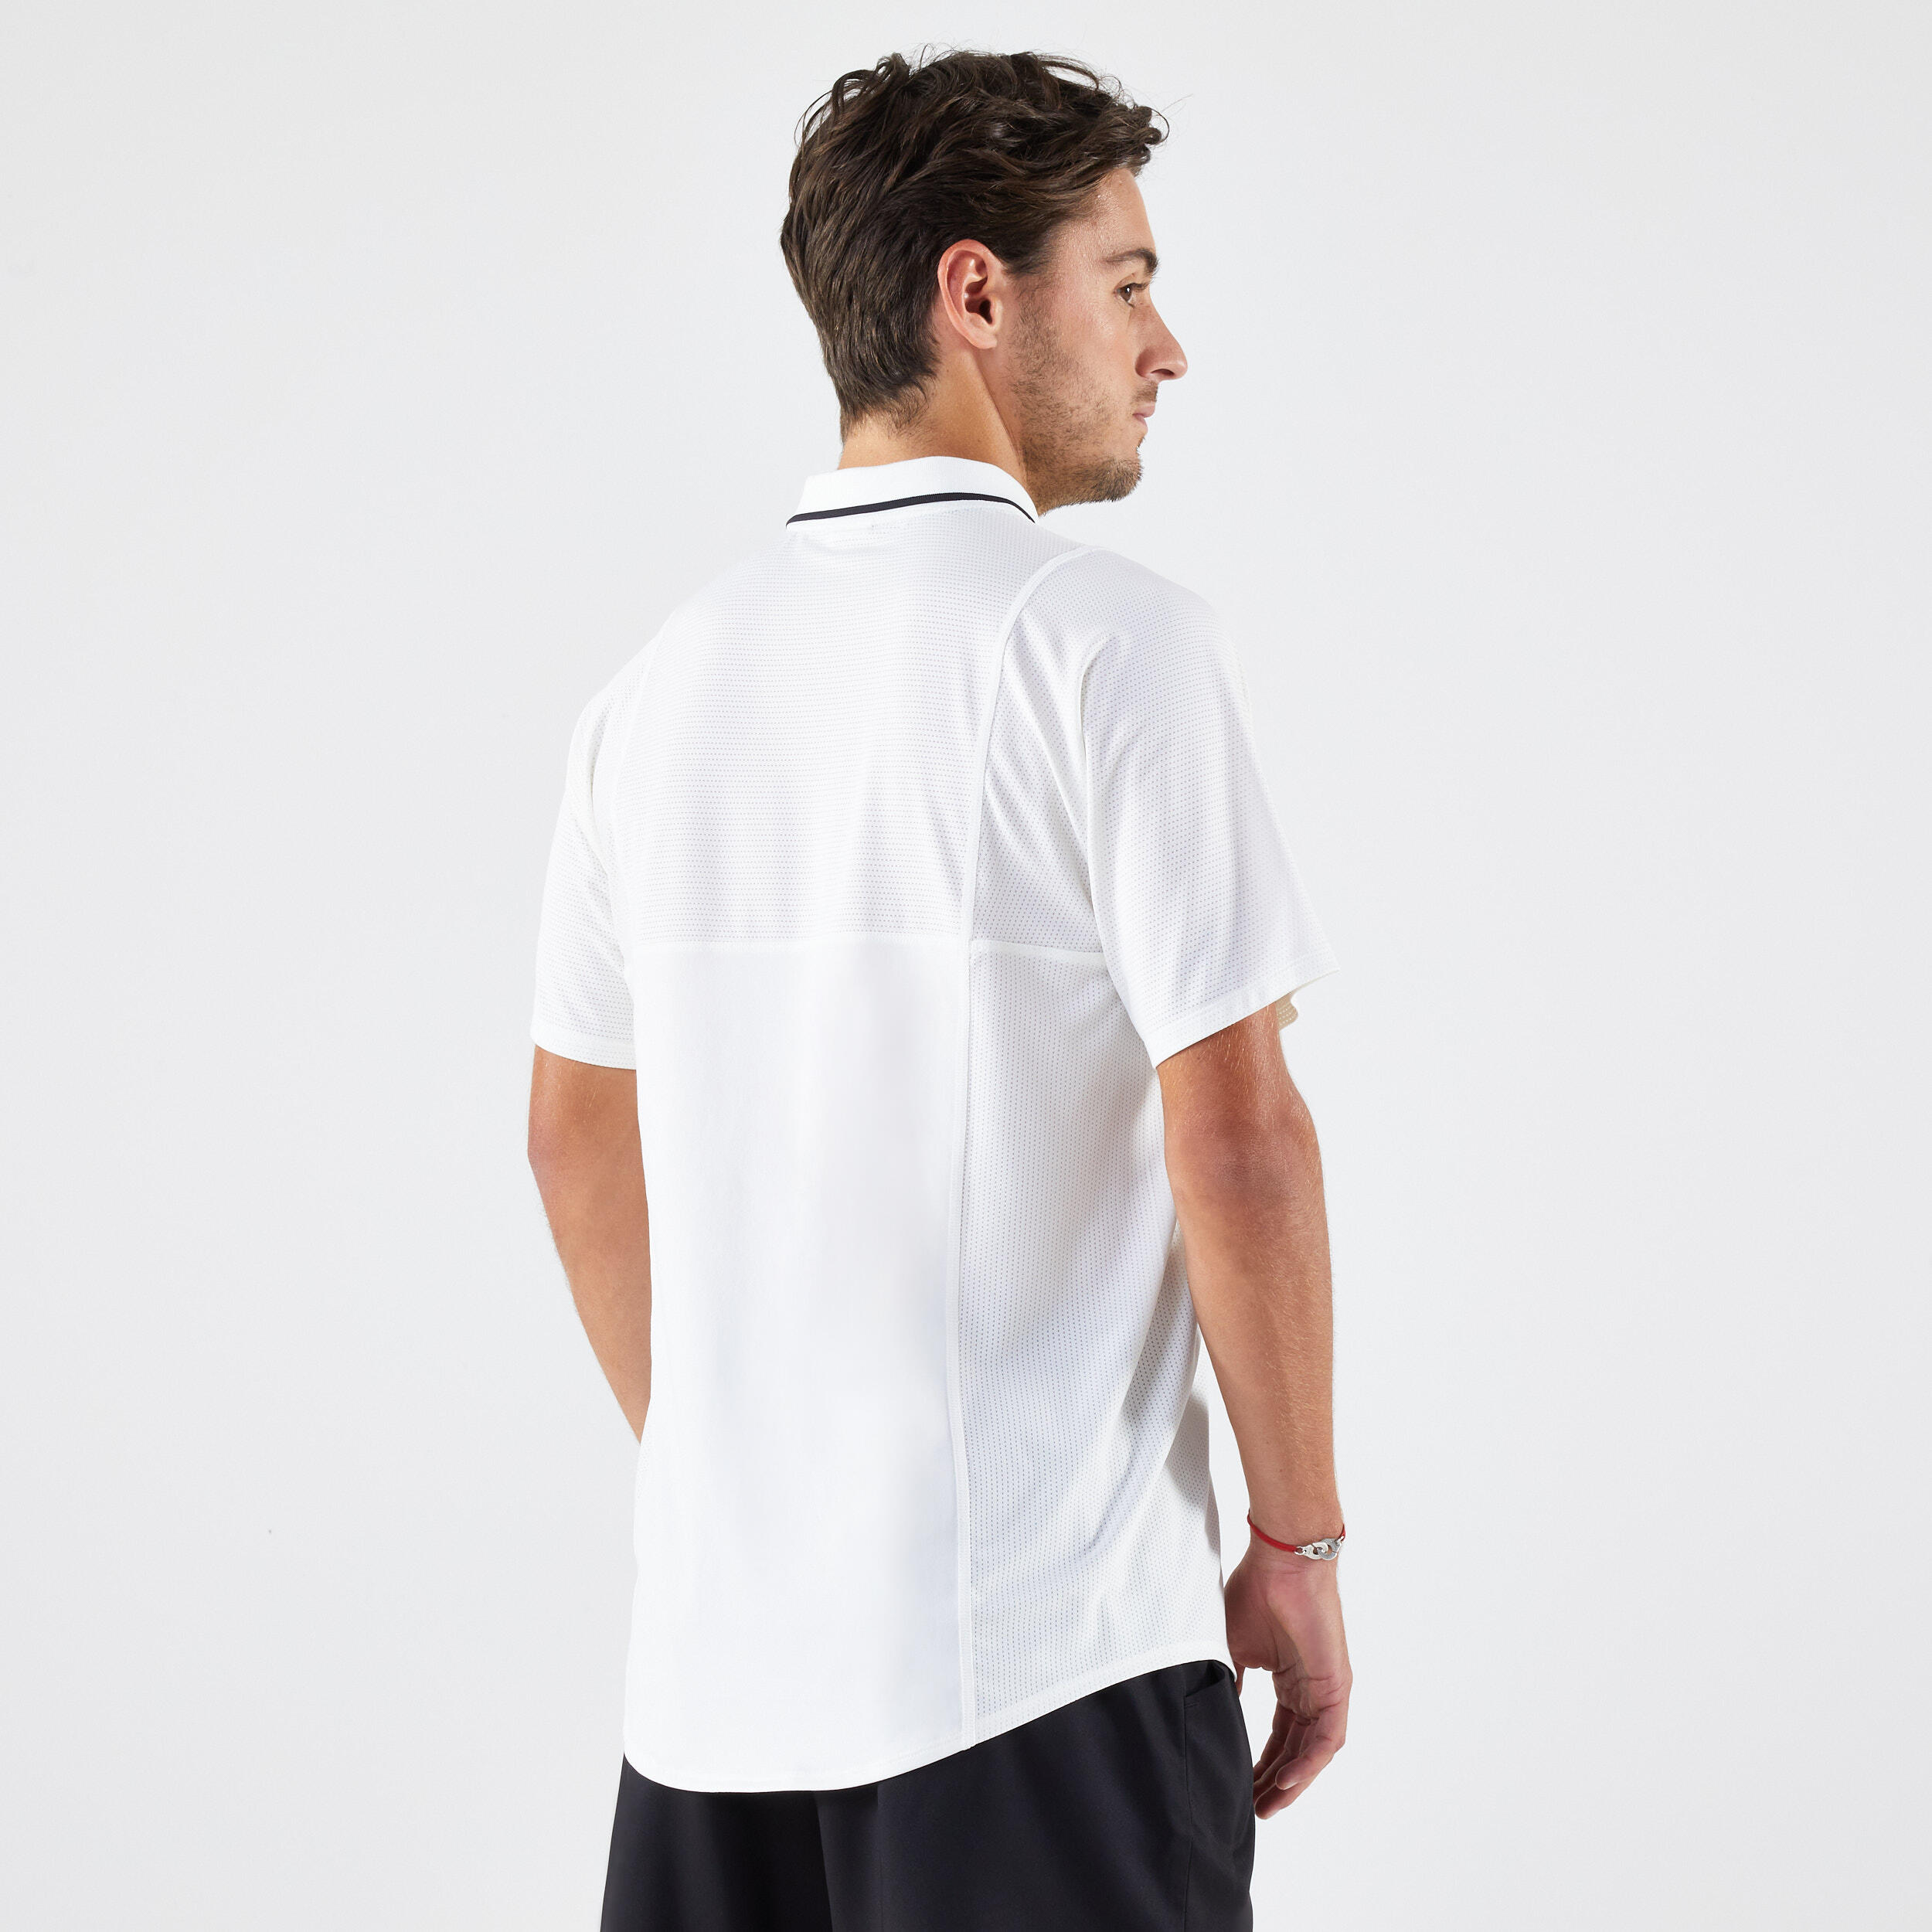 Men's Short-Sleeved Tennis Polo Shirt Dry - White 2/6